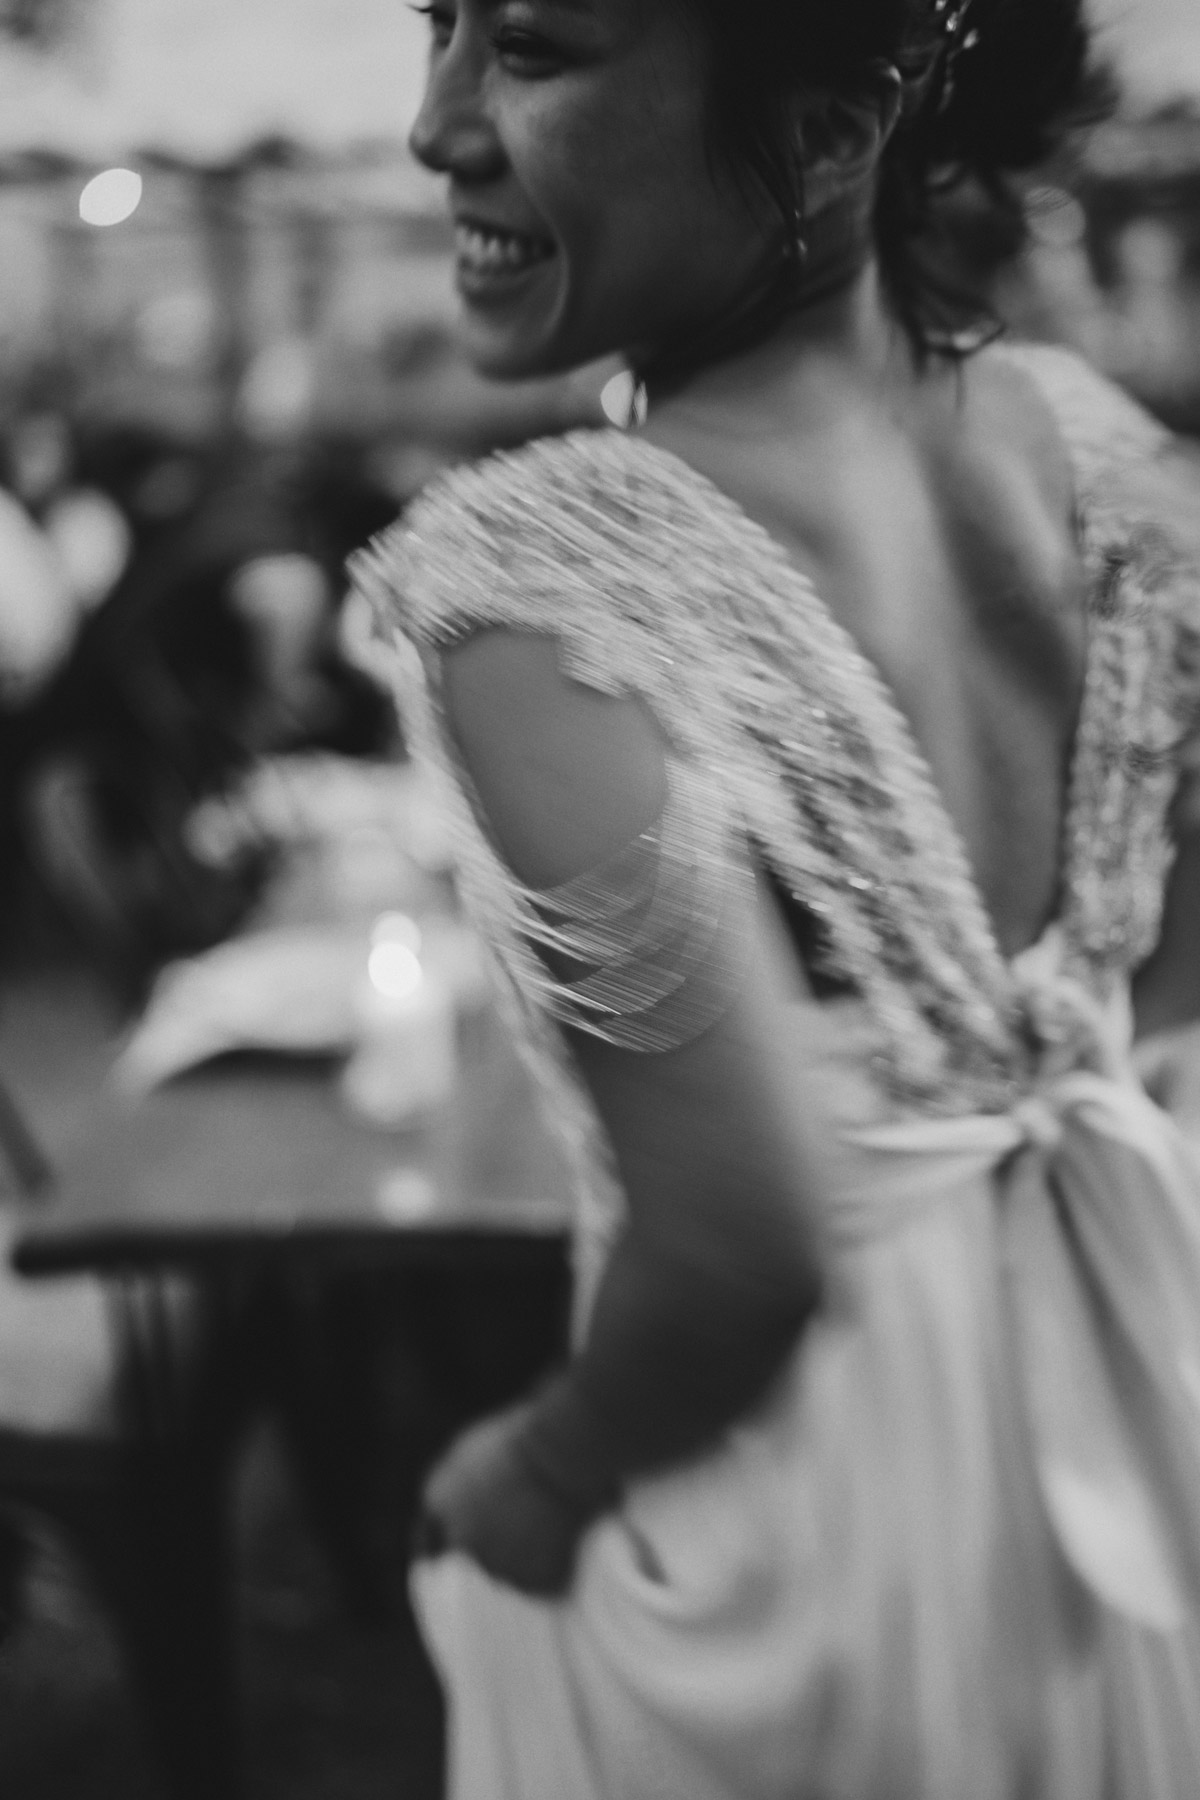 Motion Blur zur Hochzeit: Bewegungsunschärfe ist ein Stilmittel von modernen Fashion- und Hochzeitsfotografen. Hier zu sehen bei der Restaurant heimlich Treu Berlin Braut. Die Hochzeitsreportage von #hochzeitslicht findest du unter dem Link. © www.hochzeitslicht.de